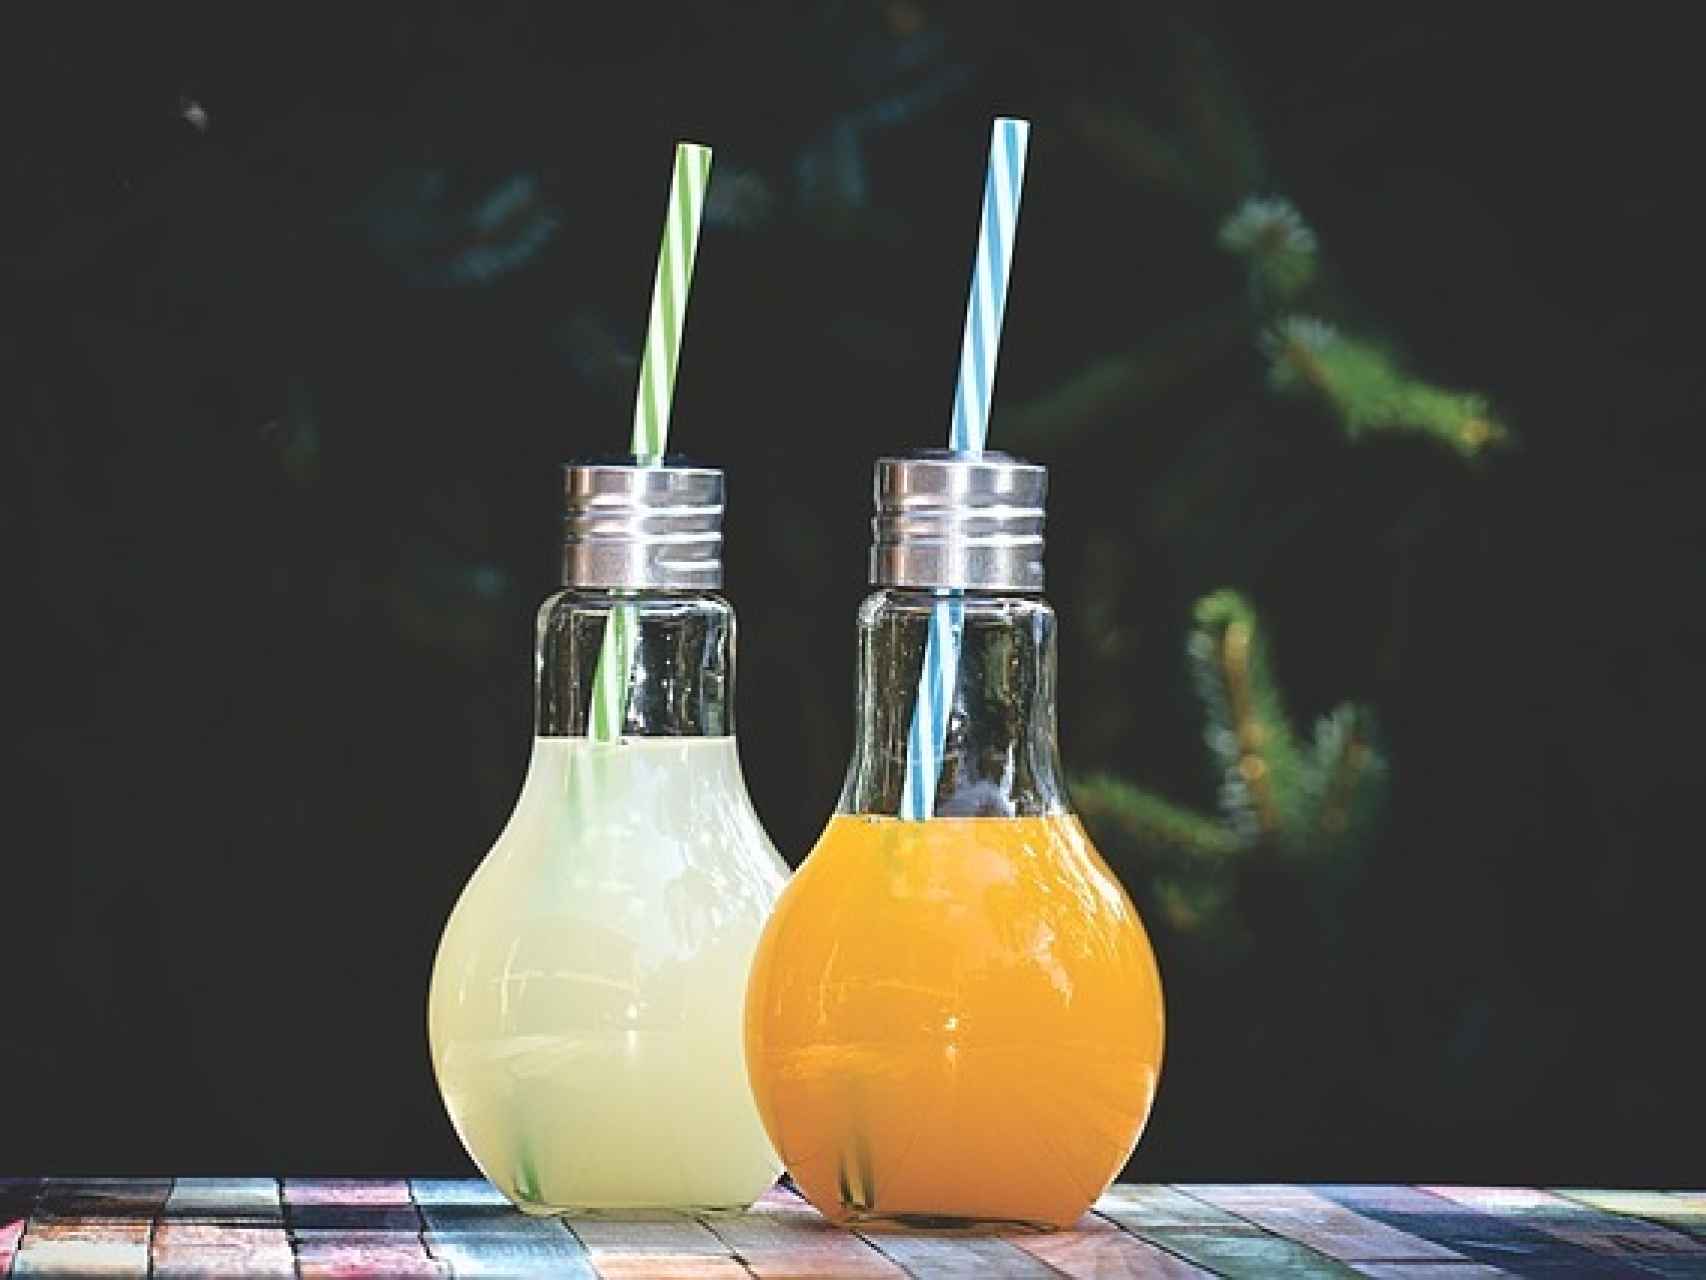 Limonada casera, horchata y cócteles son nuestros remedios contra el calor del fin de semana